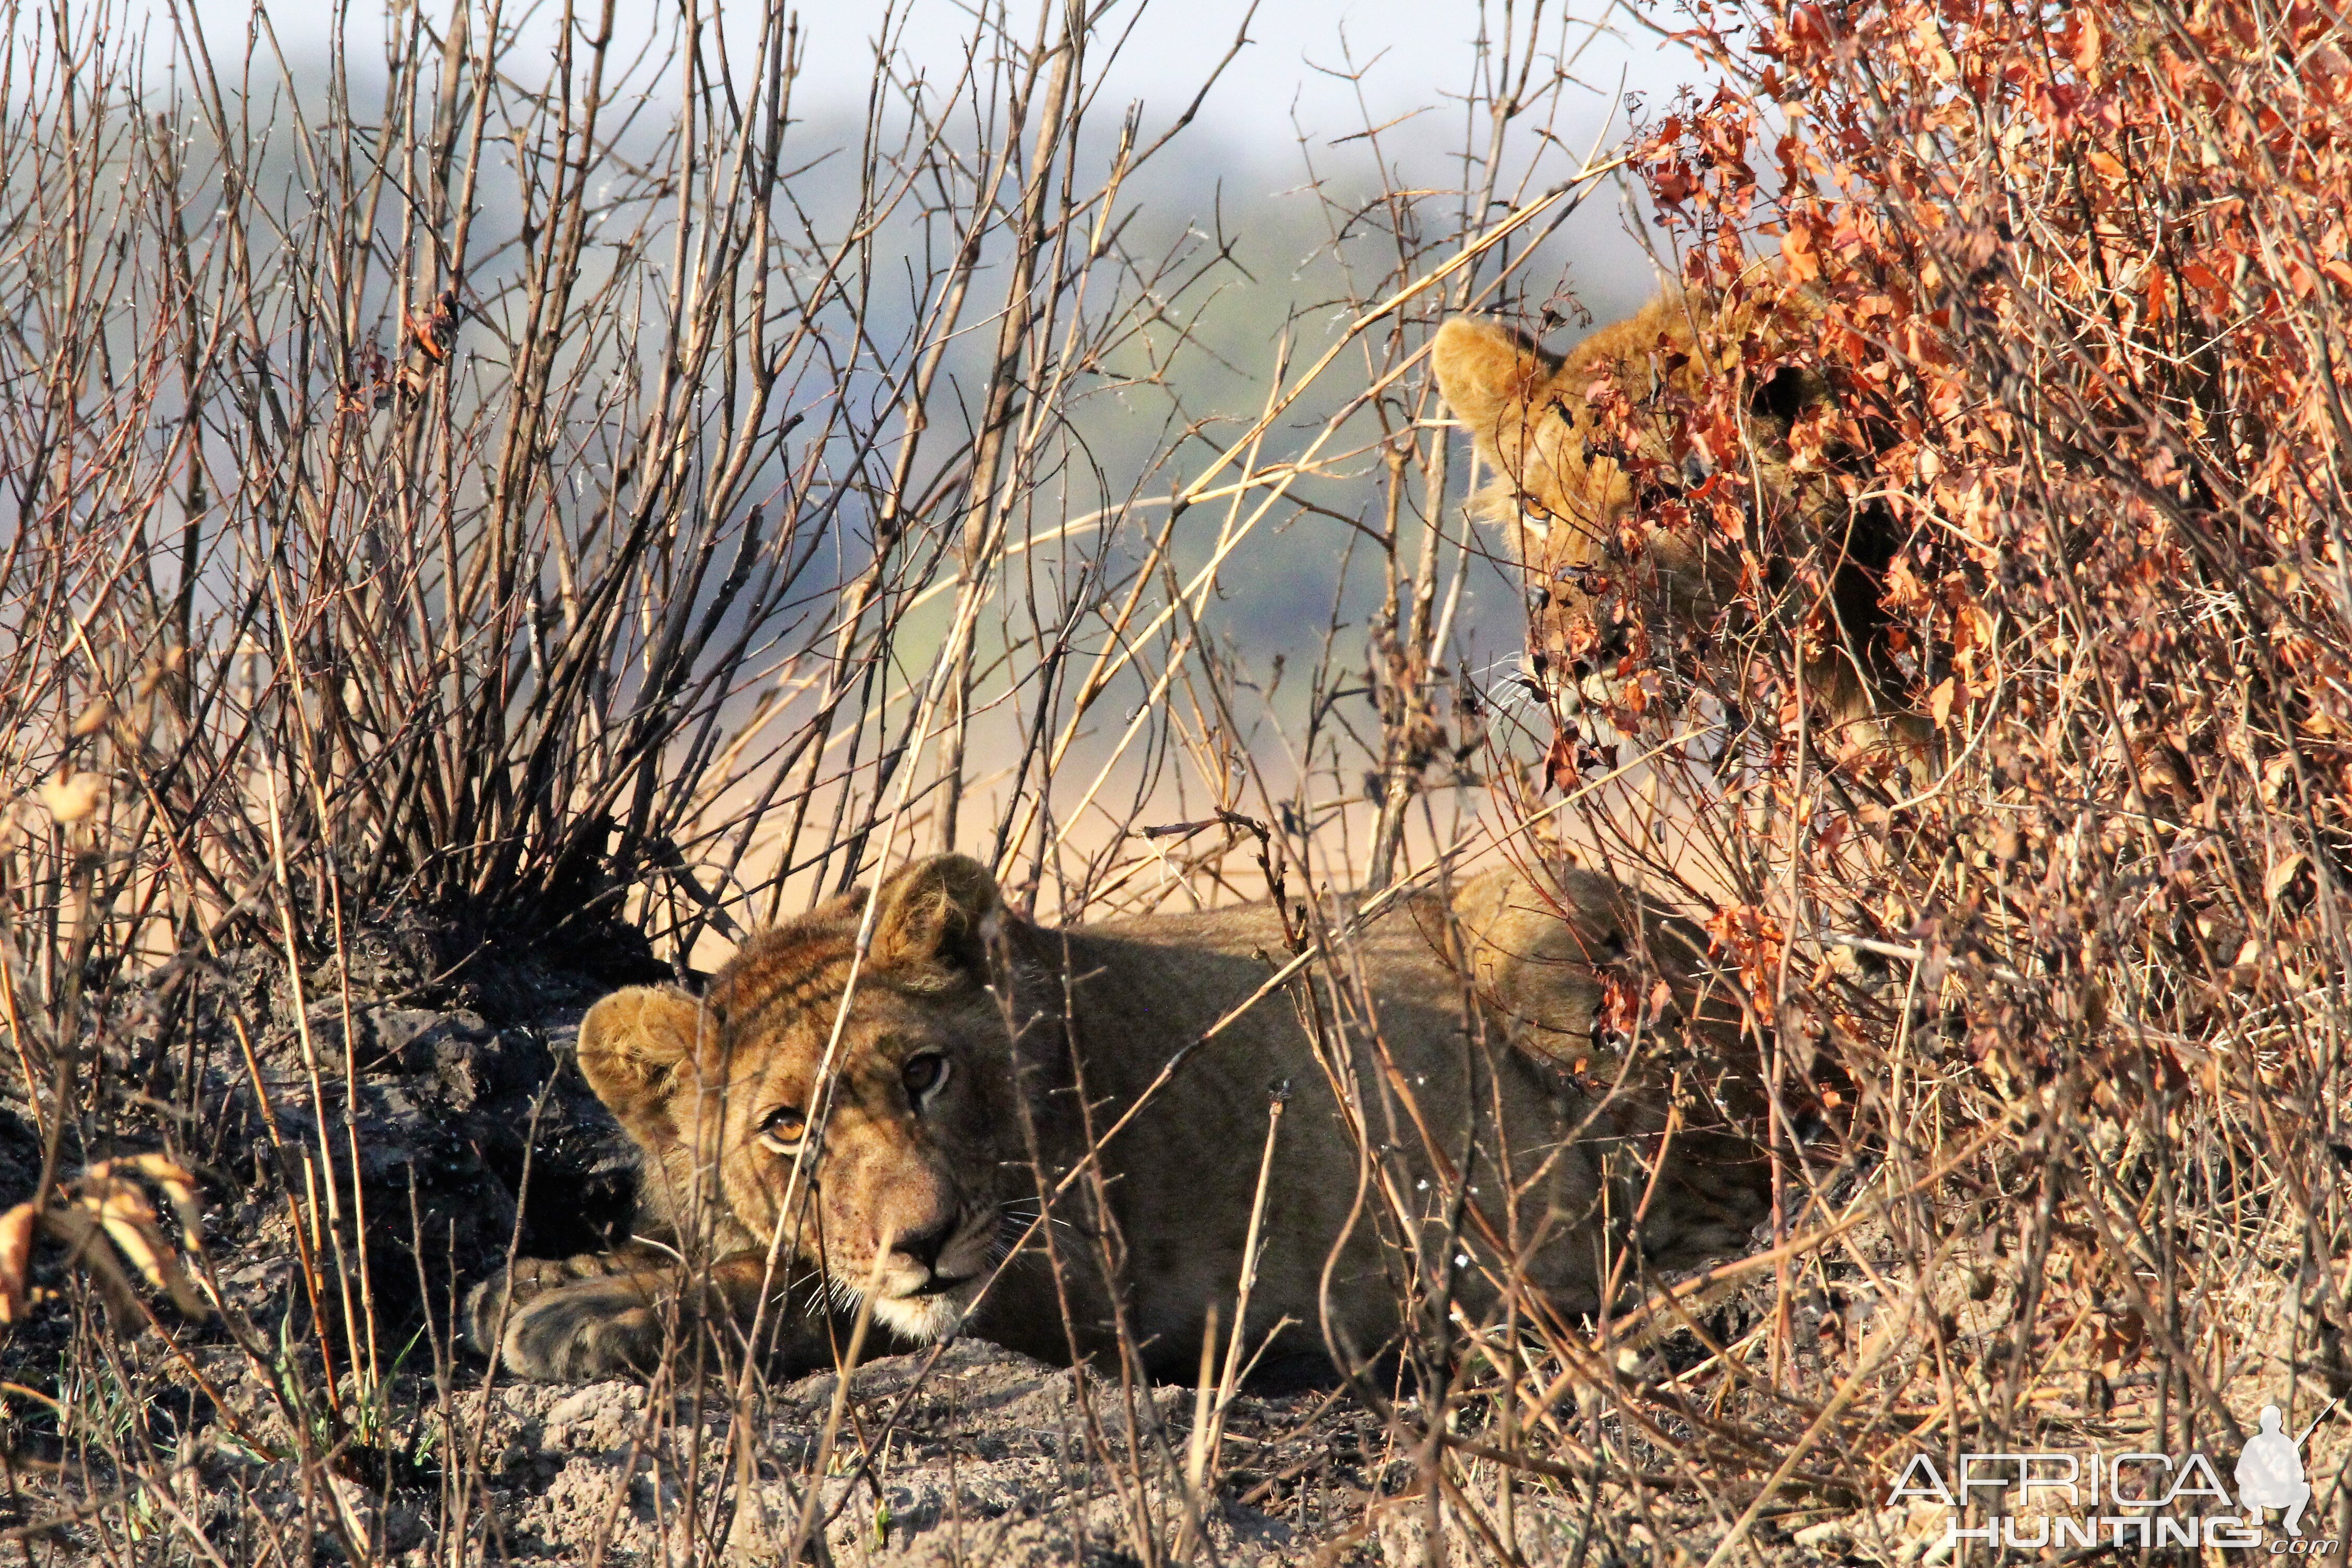 Lion in Zambia